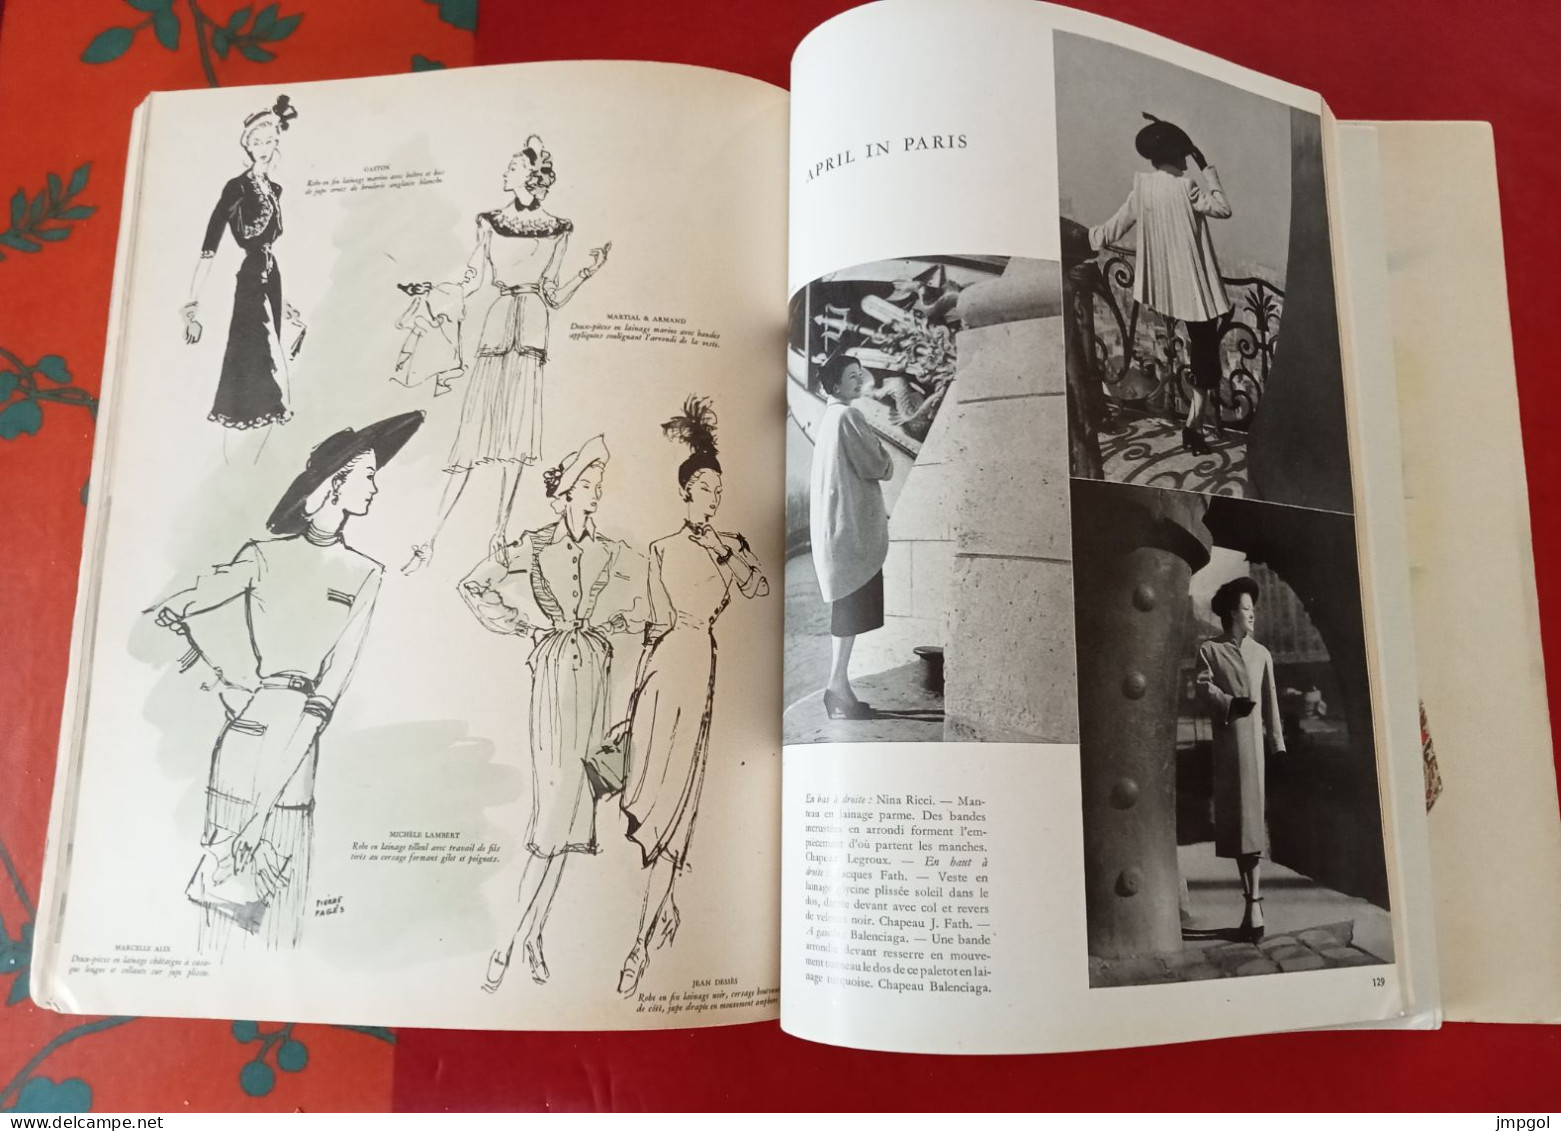 Album du Figaro La Mode de Printemps 1947 Dior Lelong Balenciaga Balmain Nina Ricci Jacques Fath Maggy Rouf Molineux